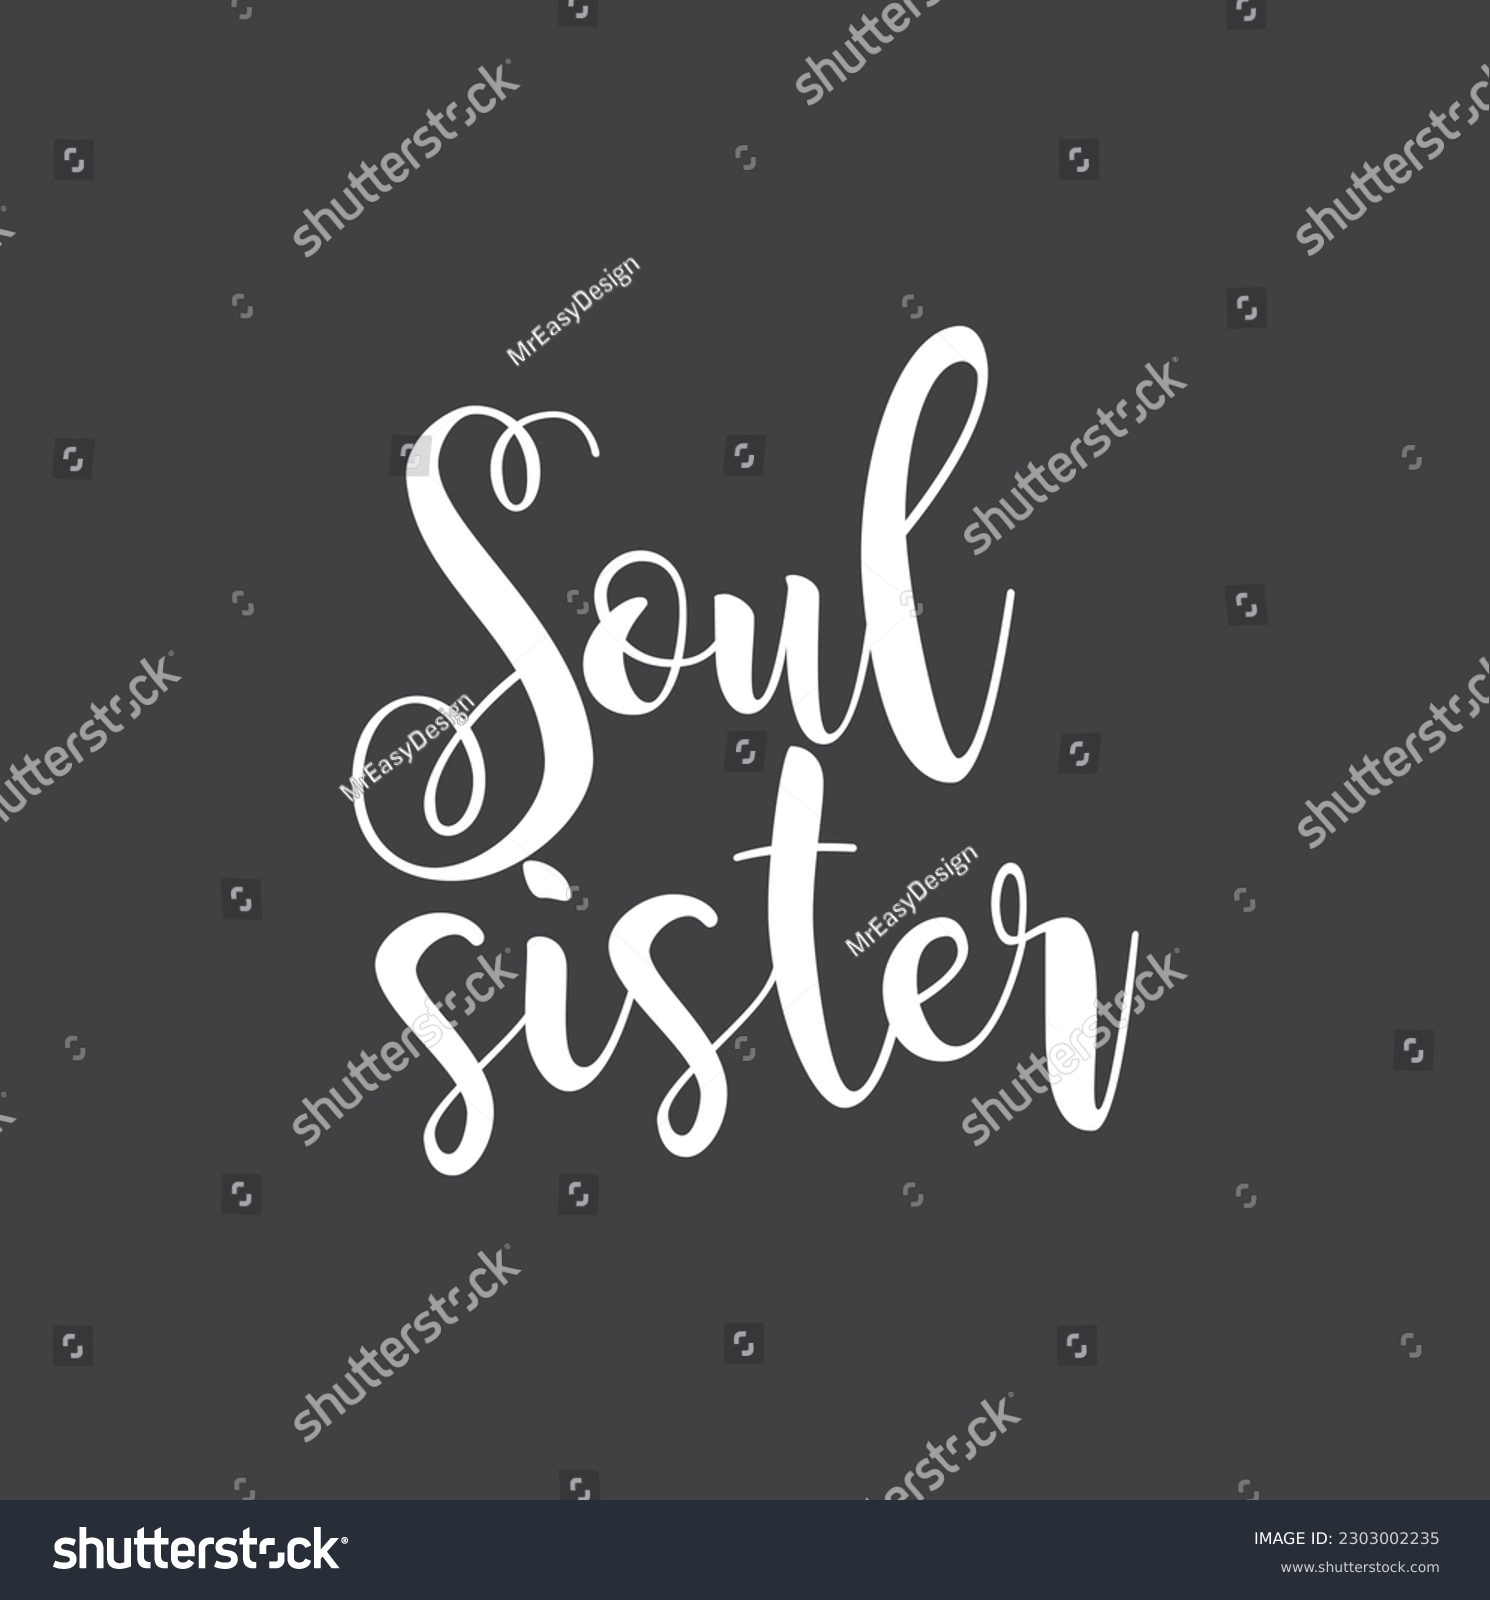 SVG of soul sister with lettering design on dark background. svg